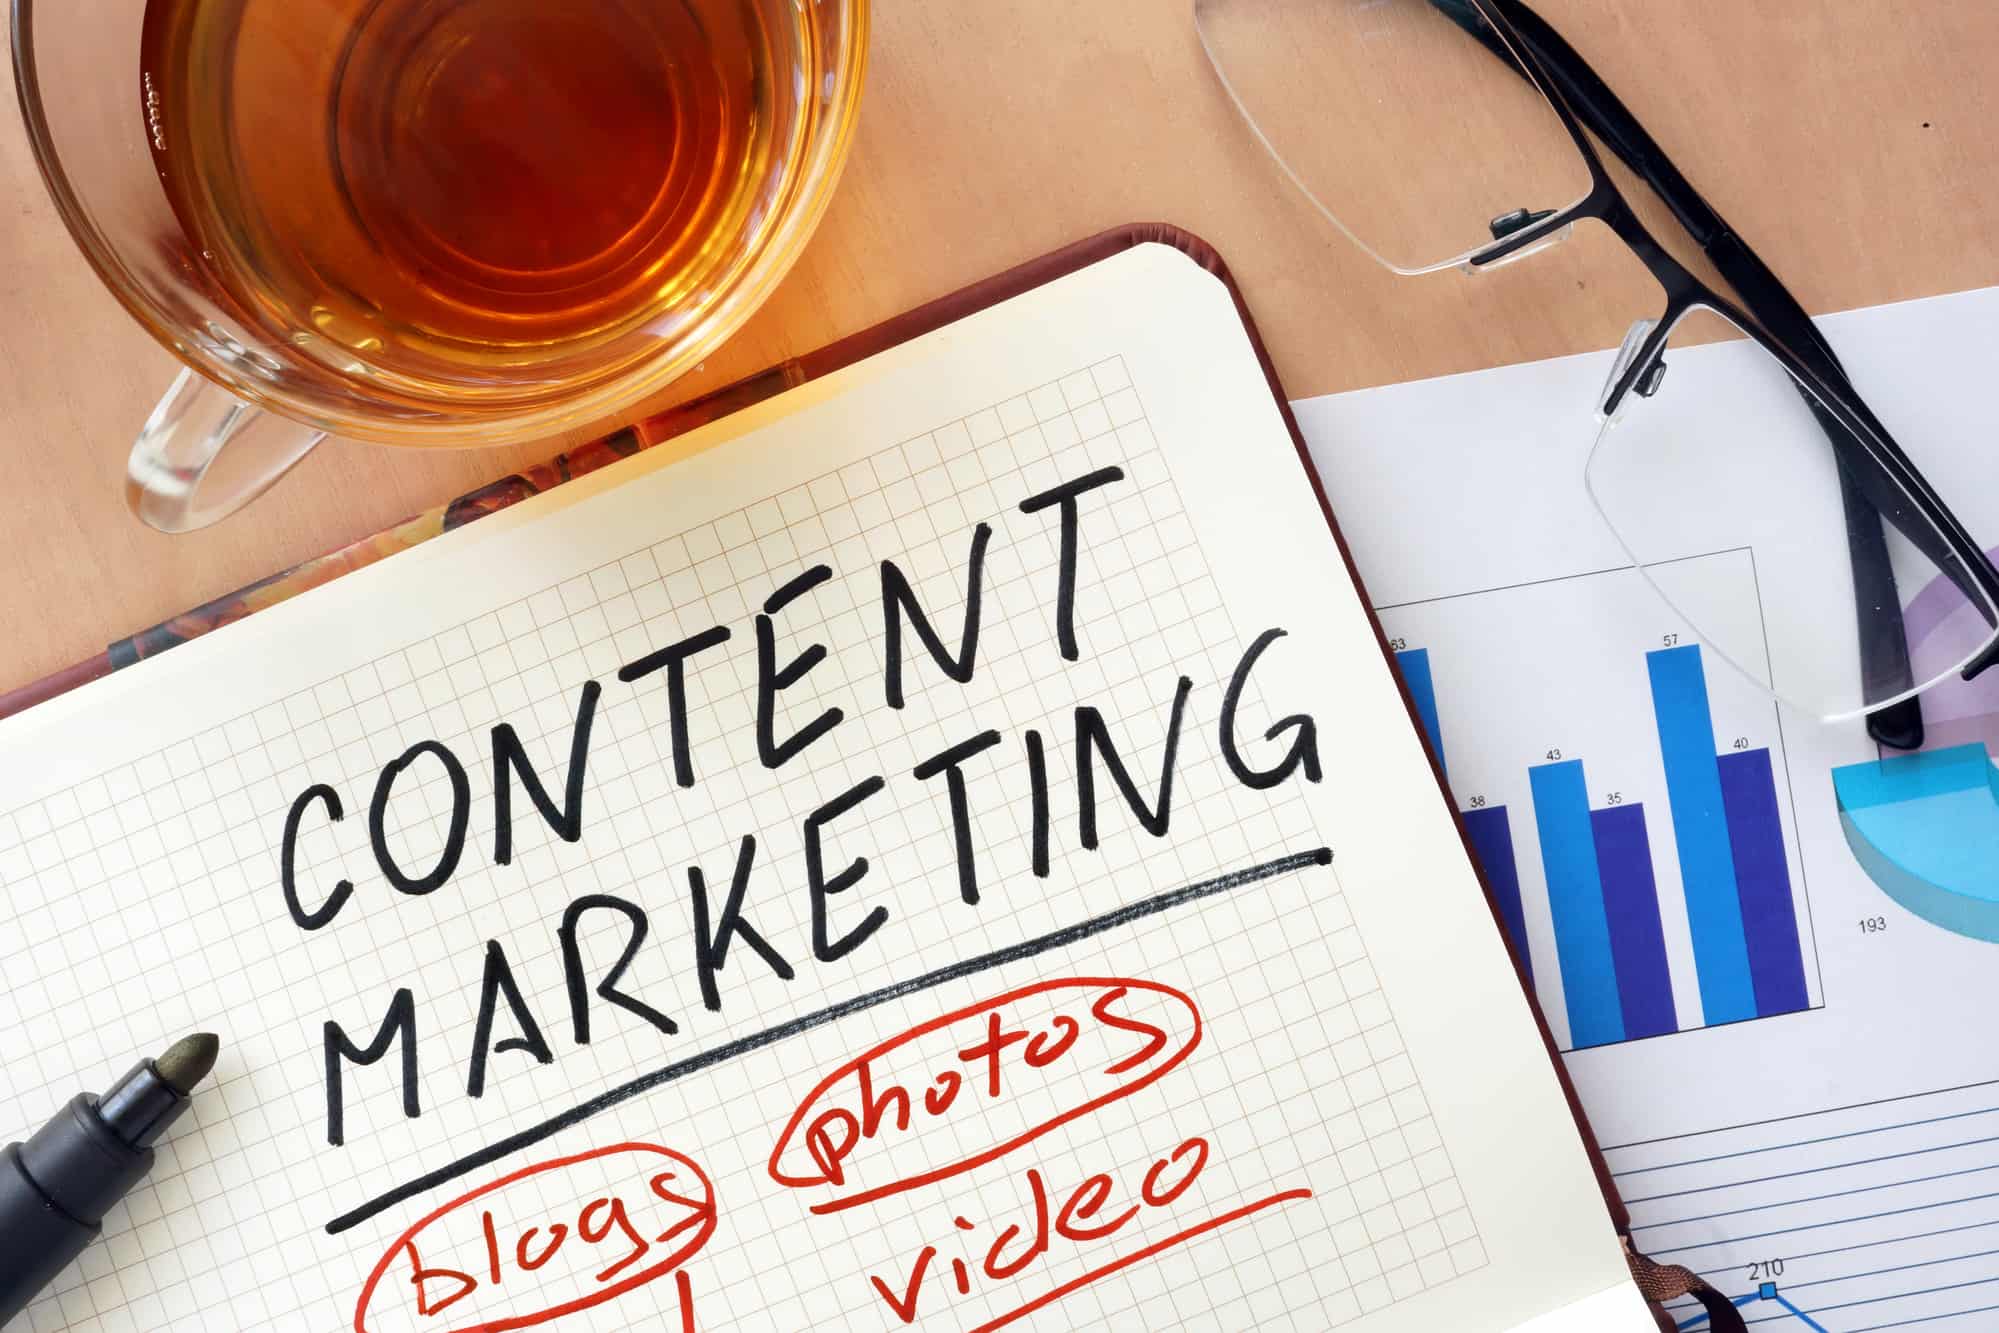 Content Marketing zur Kundengewinnung